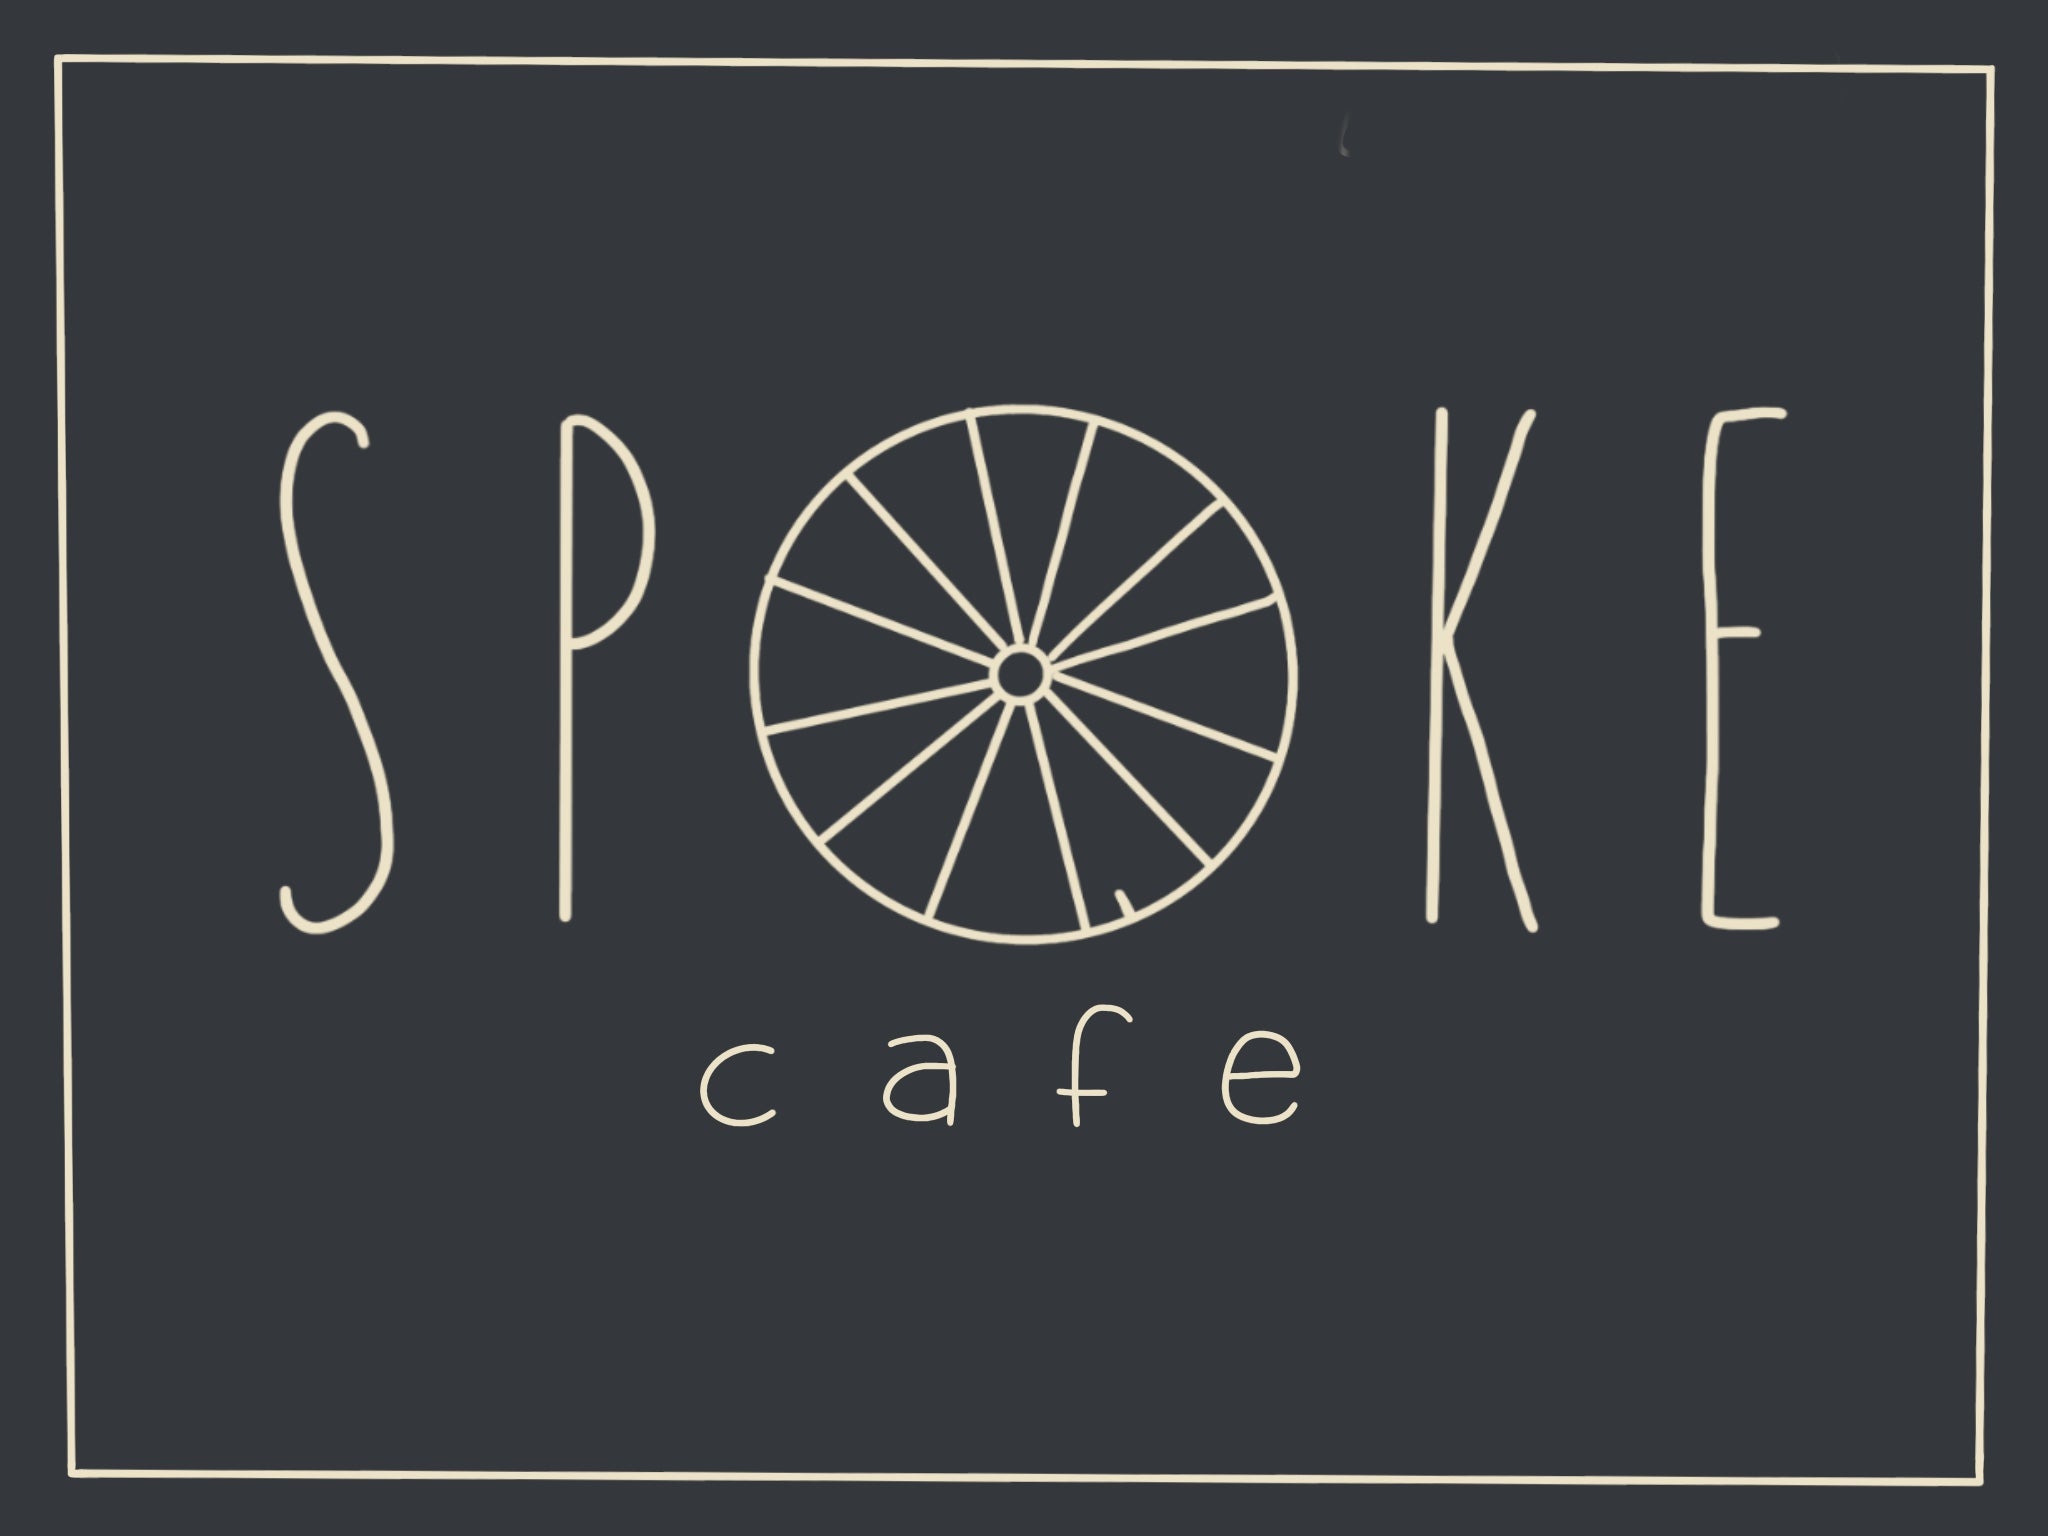 Spoke Cafe